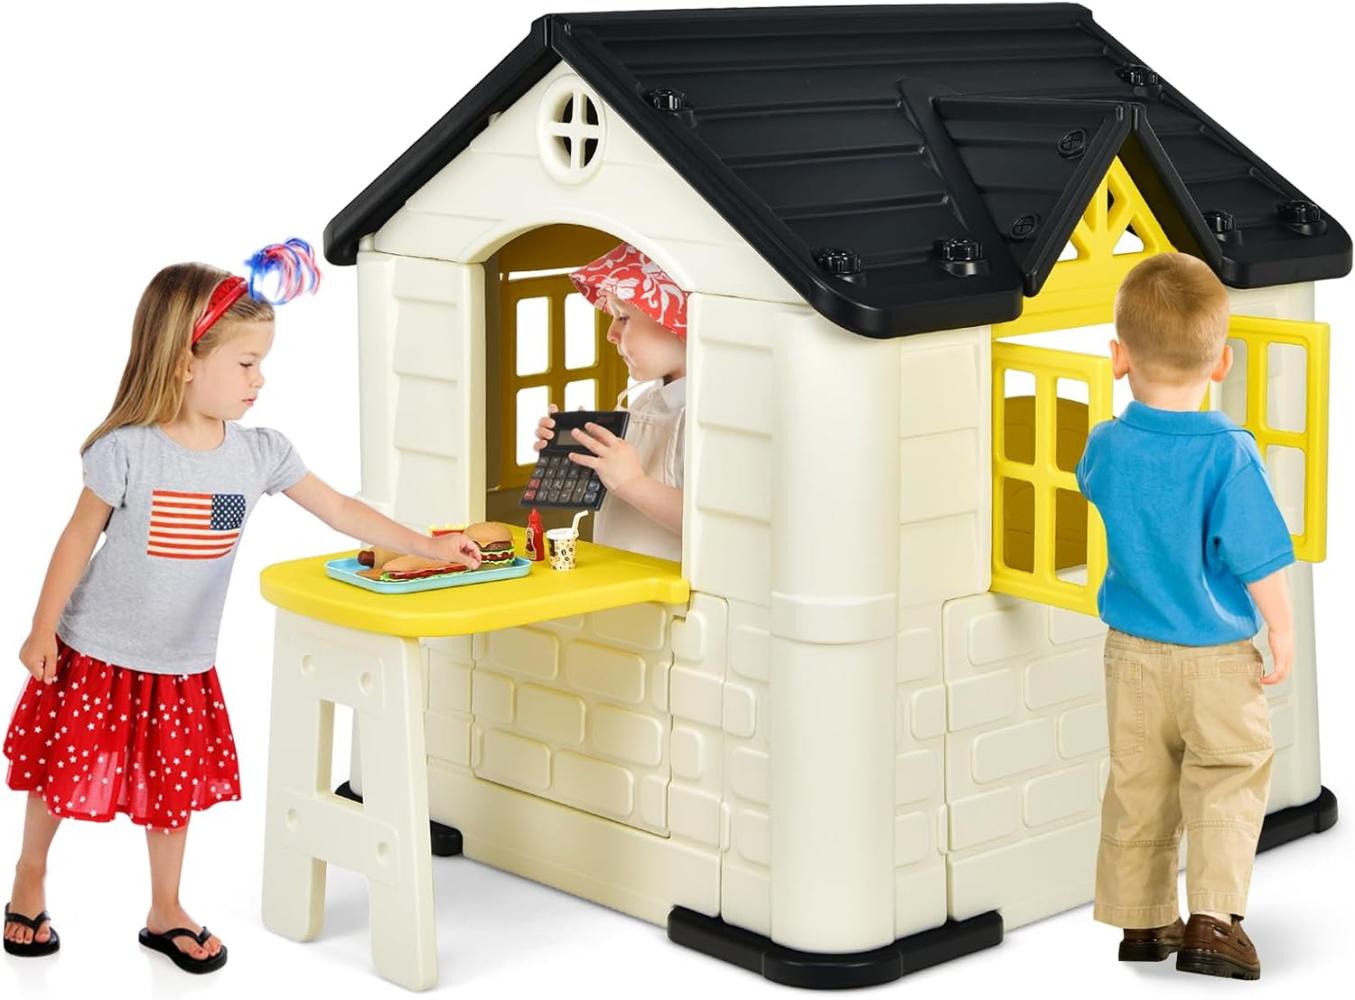 COSTWAY 164 x 124 x 132 cm Kinder Spielhaus mit Pickniktisch, Türen und Fenstern, Kinderhäuschen Outdoor inkl. Spielzeugset und Regenschutzhülle, ideal für Jungen und Mädchen (Gelb) Bild 1